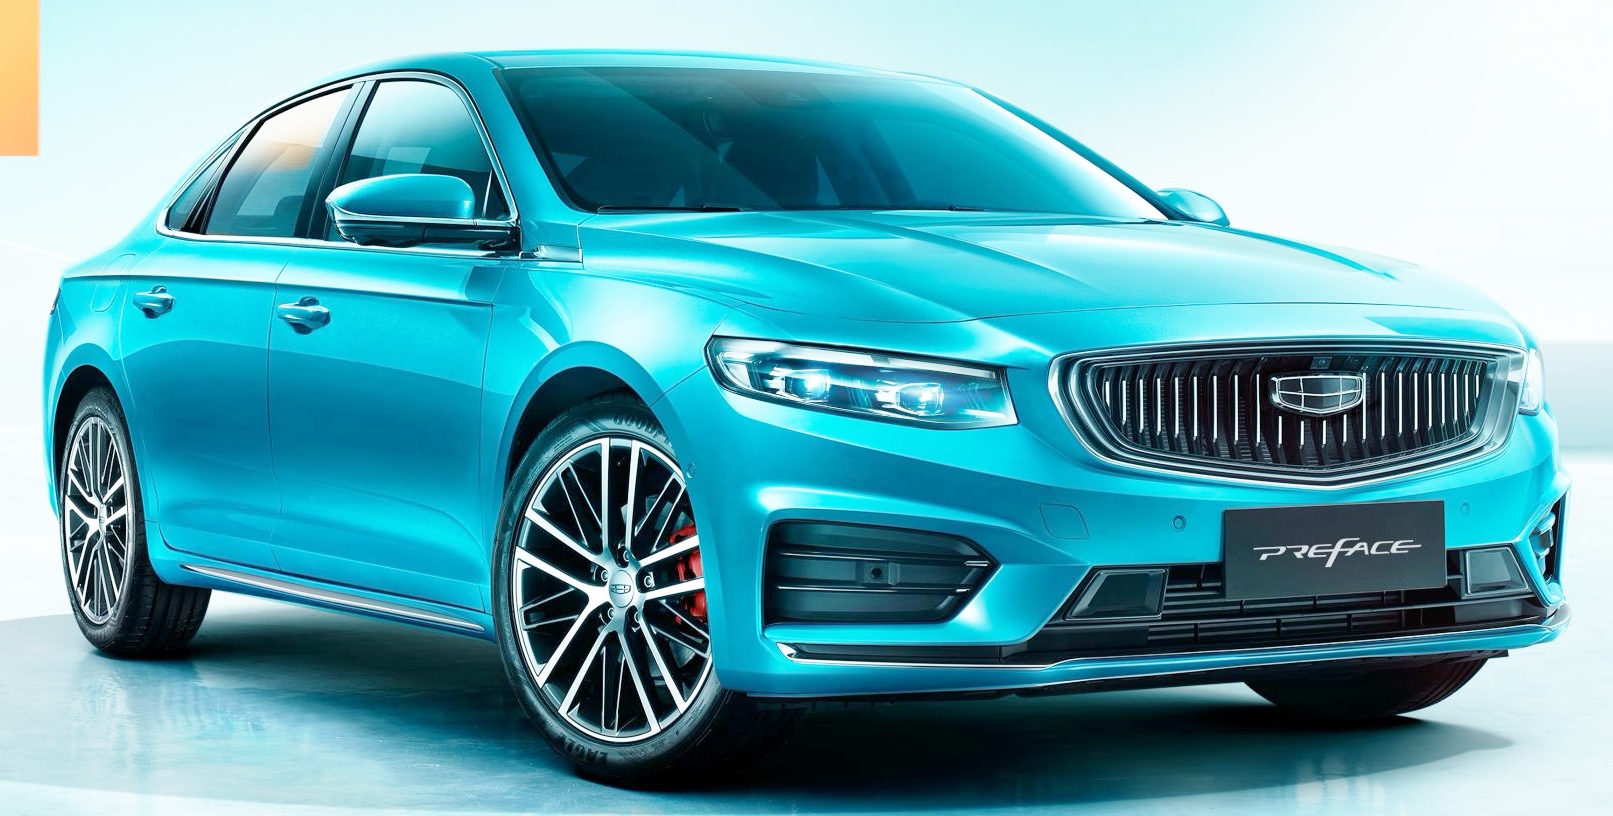 Liên doanh Geely-Volvo giới thiệu xe sedan thể thao cao cấp Preface 2021